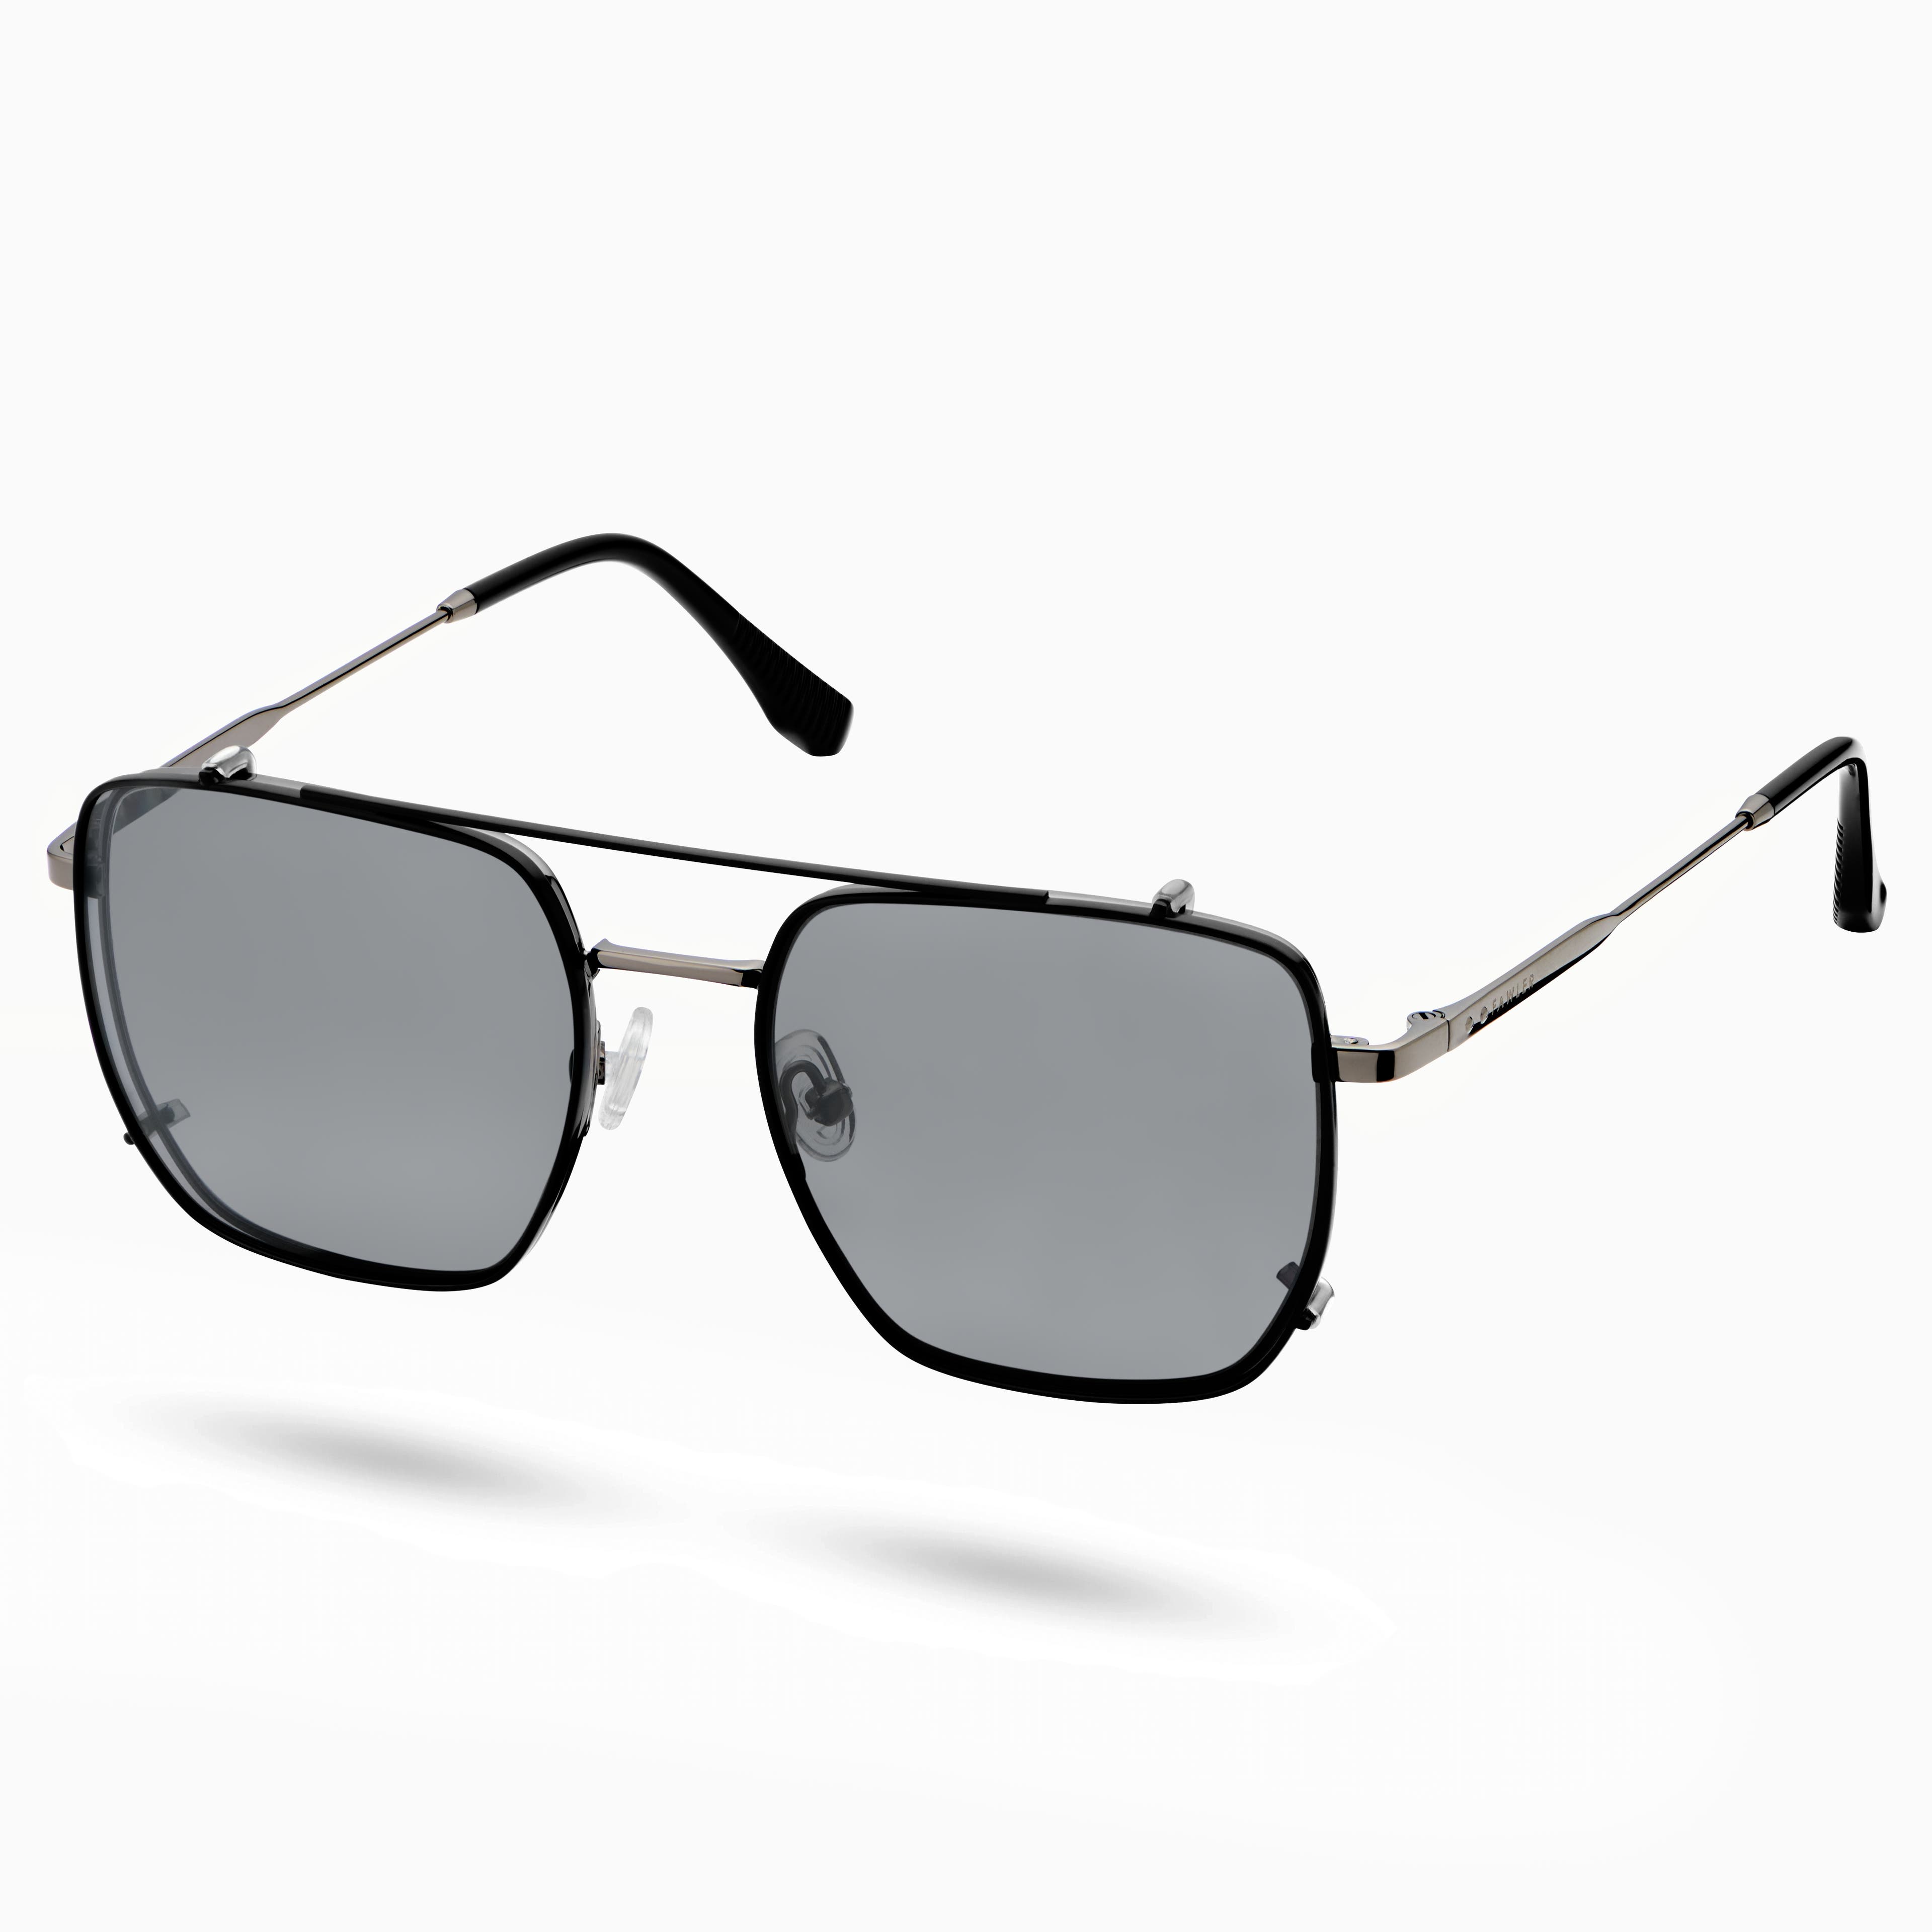 Gafas de clip con lentes sin graduar de bloqueo de luz azul y lentes polarizadas en negro y azul